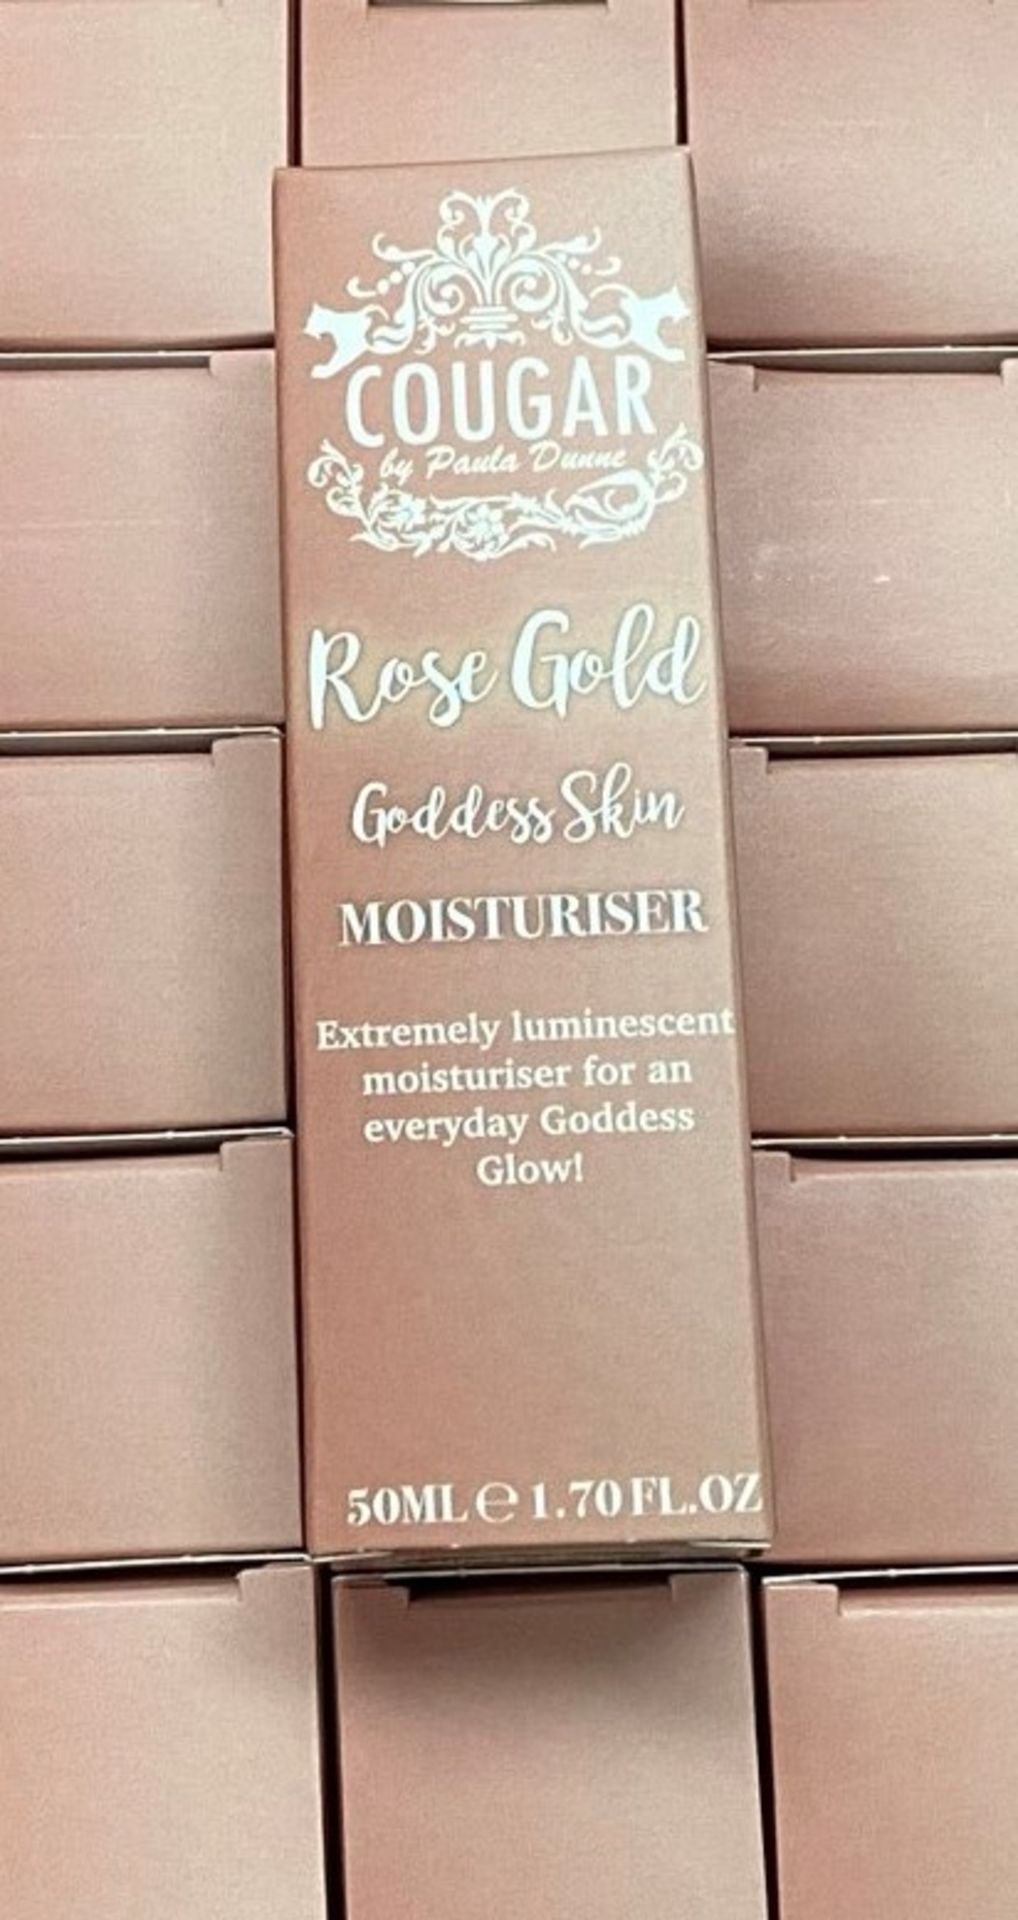 110 x Cougar Rose Gold Goddess Skin Moisturiser (50ml) - 2 outer boxes